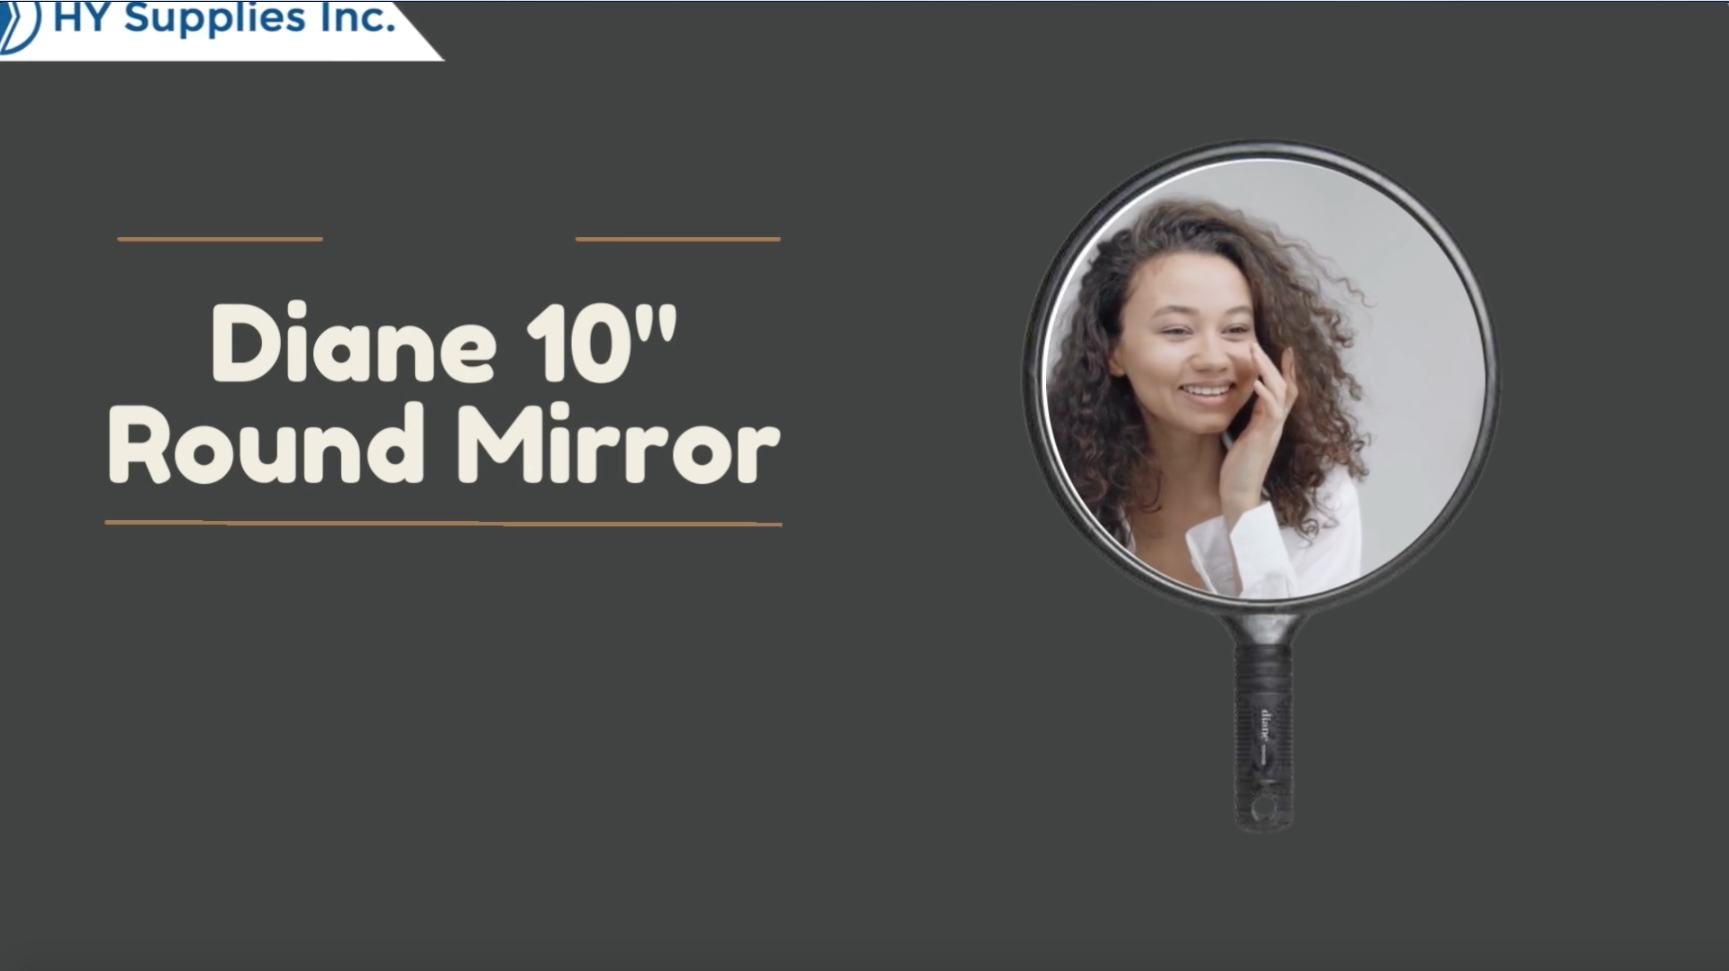 Diane 10" Round Mirror